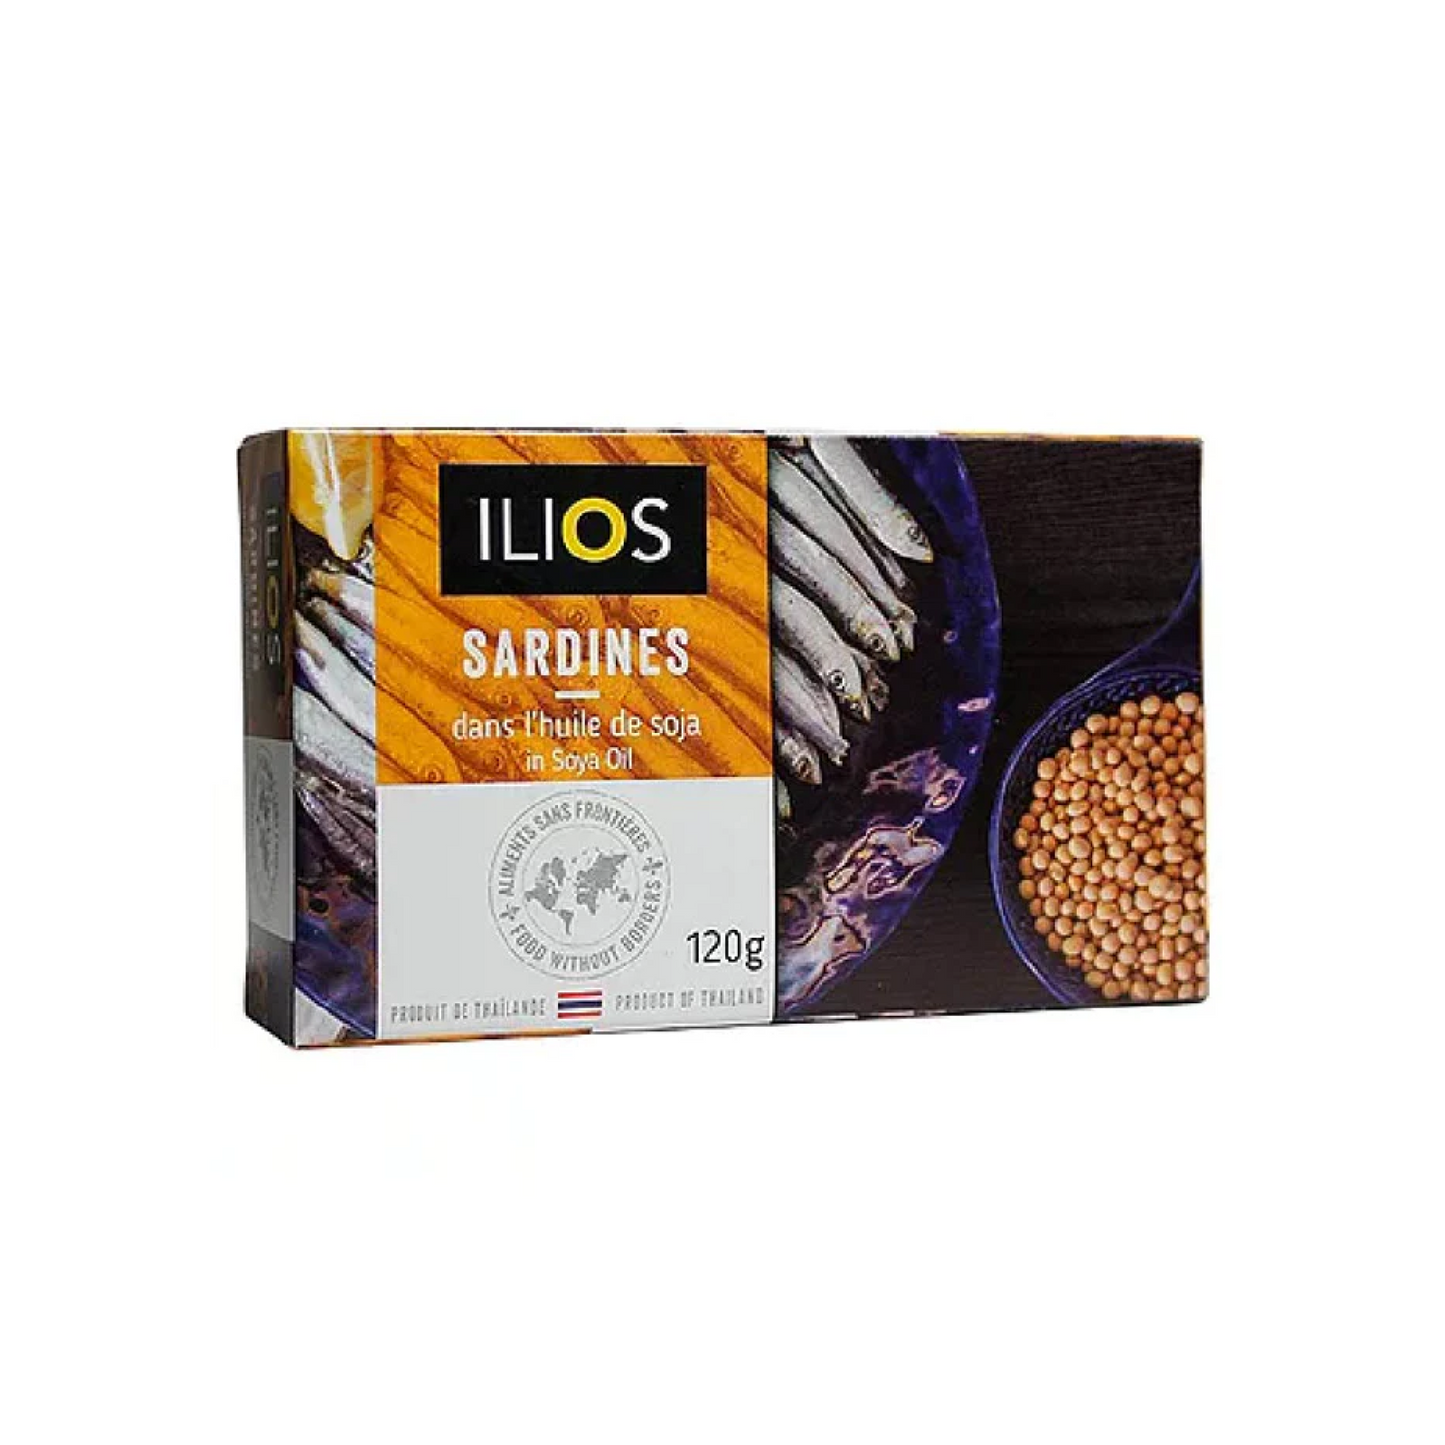 Ilios Sardines in Soya Oil 120g